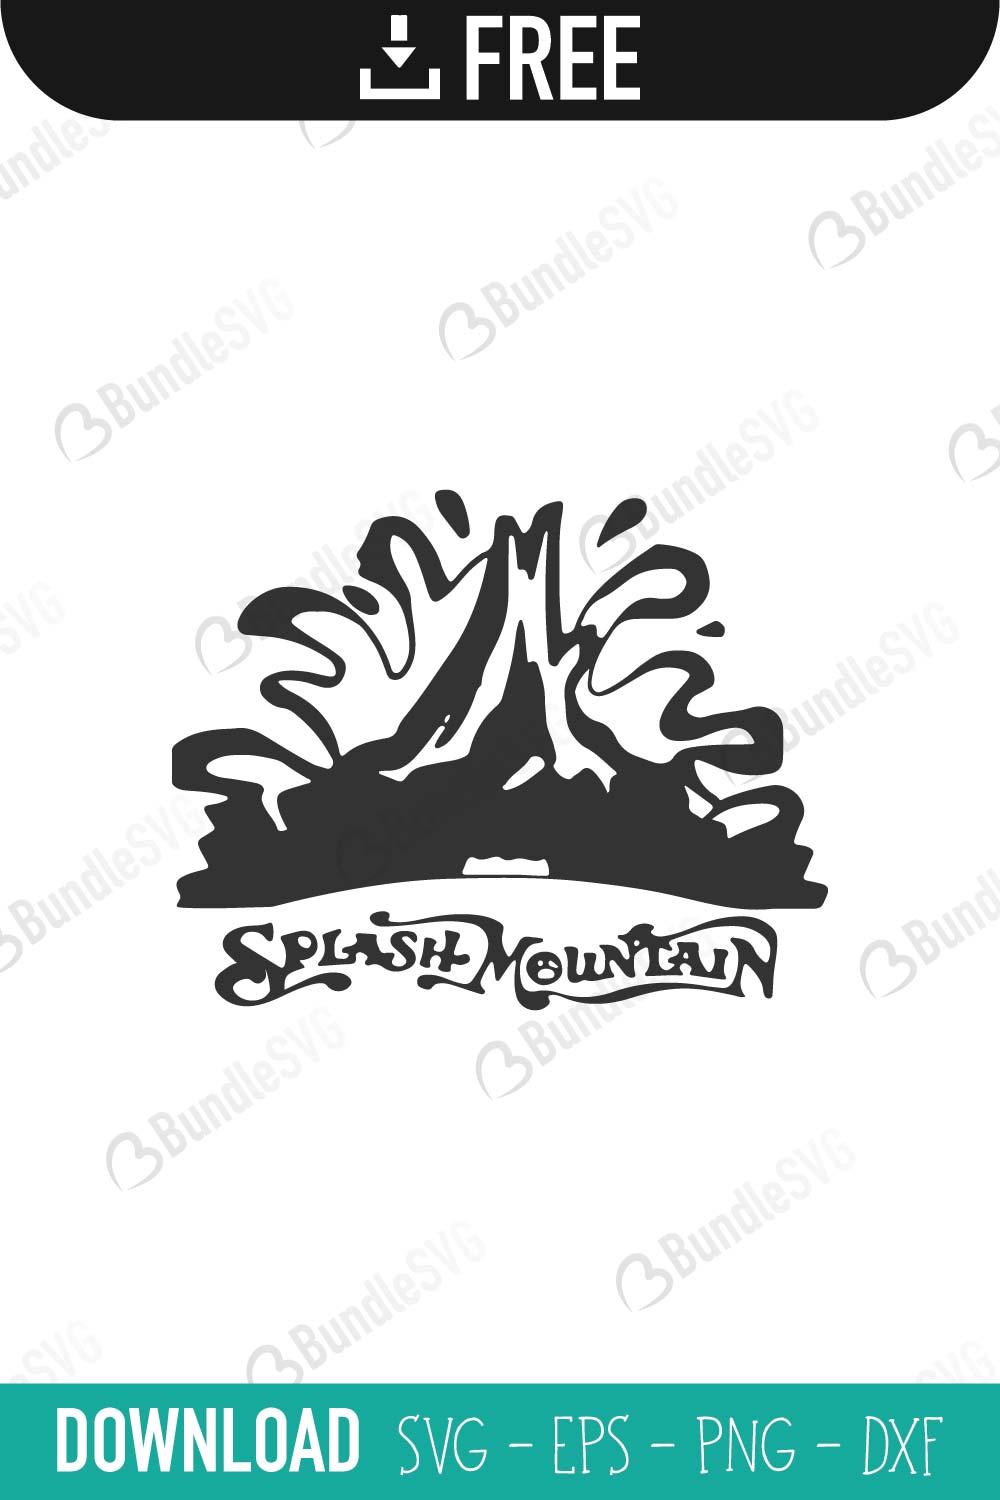 Splash Mountain SVG Cut Files Free Download | BundleSVG